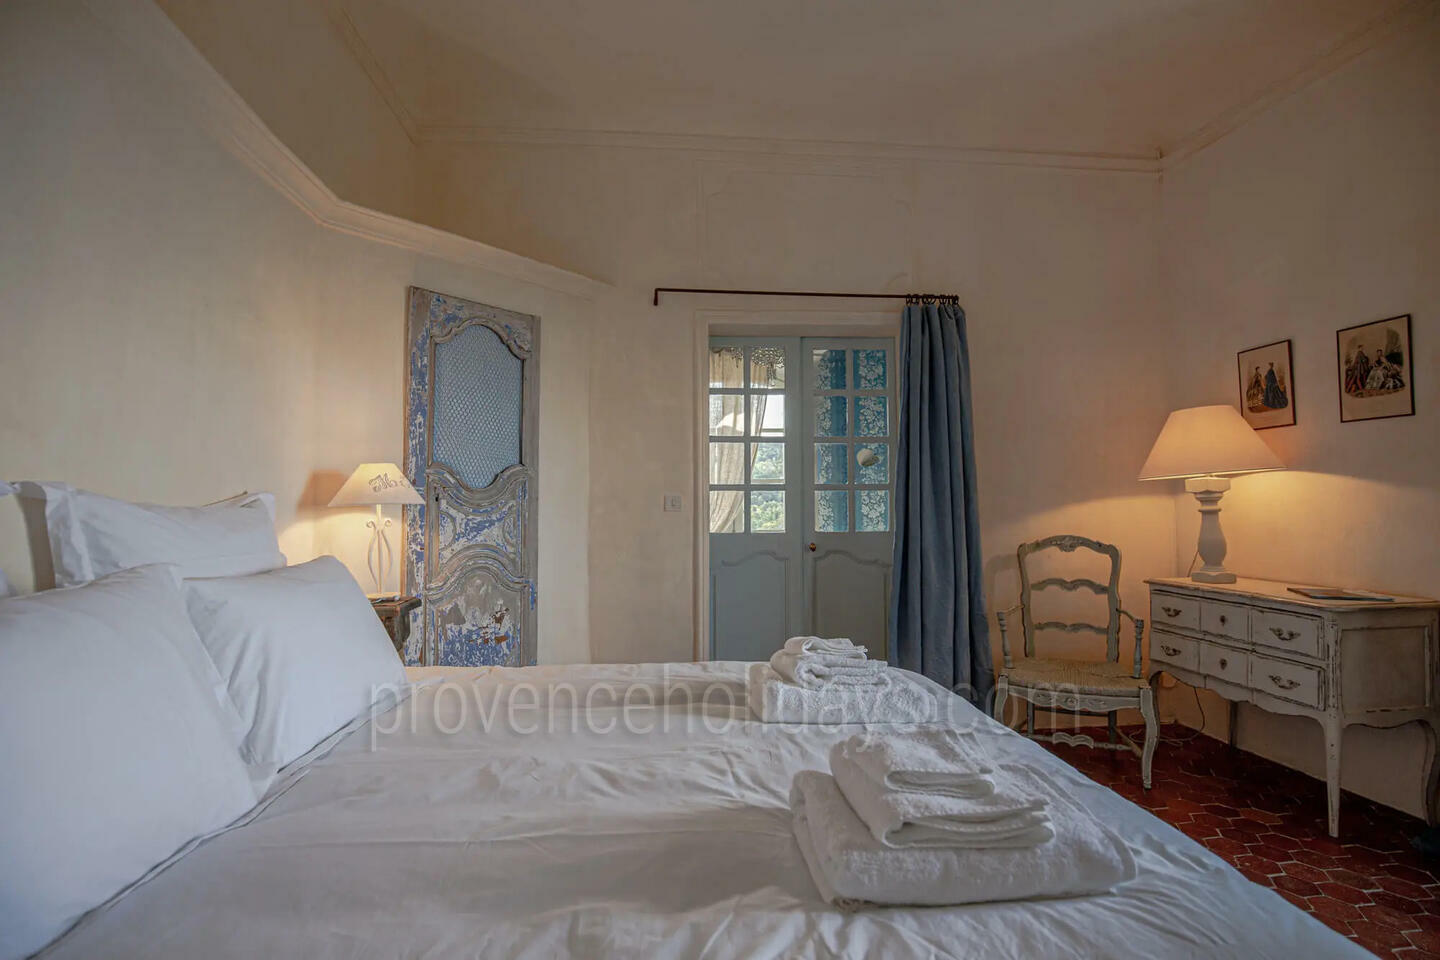 78 - Château de Gignac: Villa: Bedroom